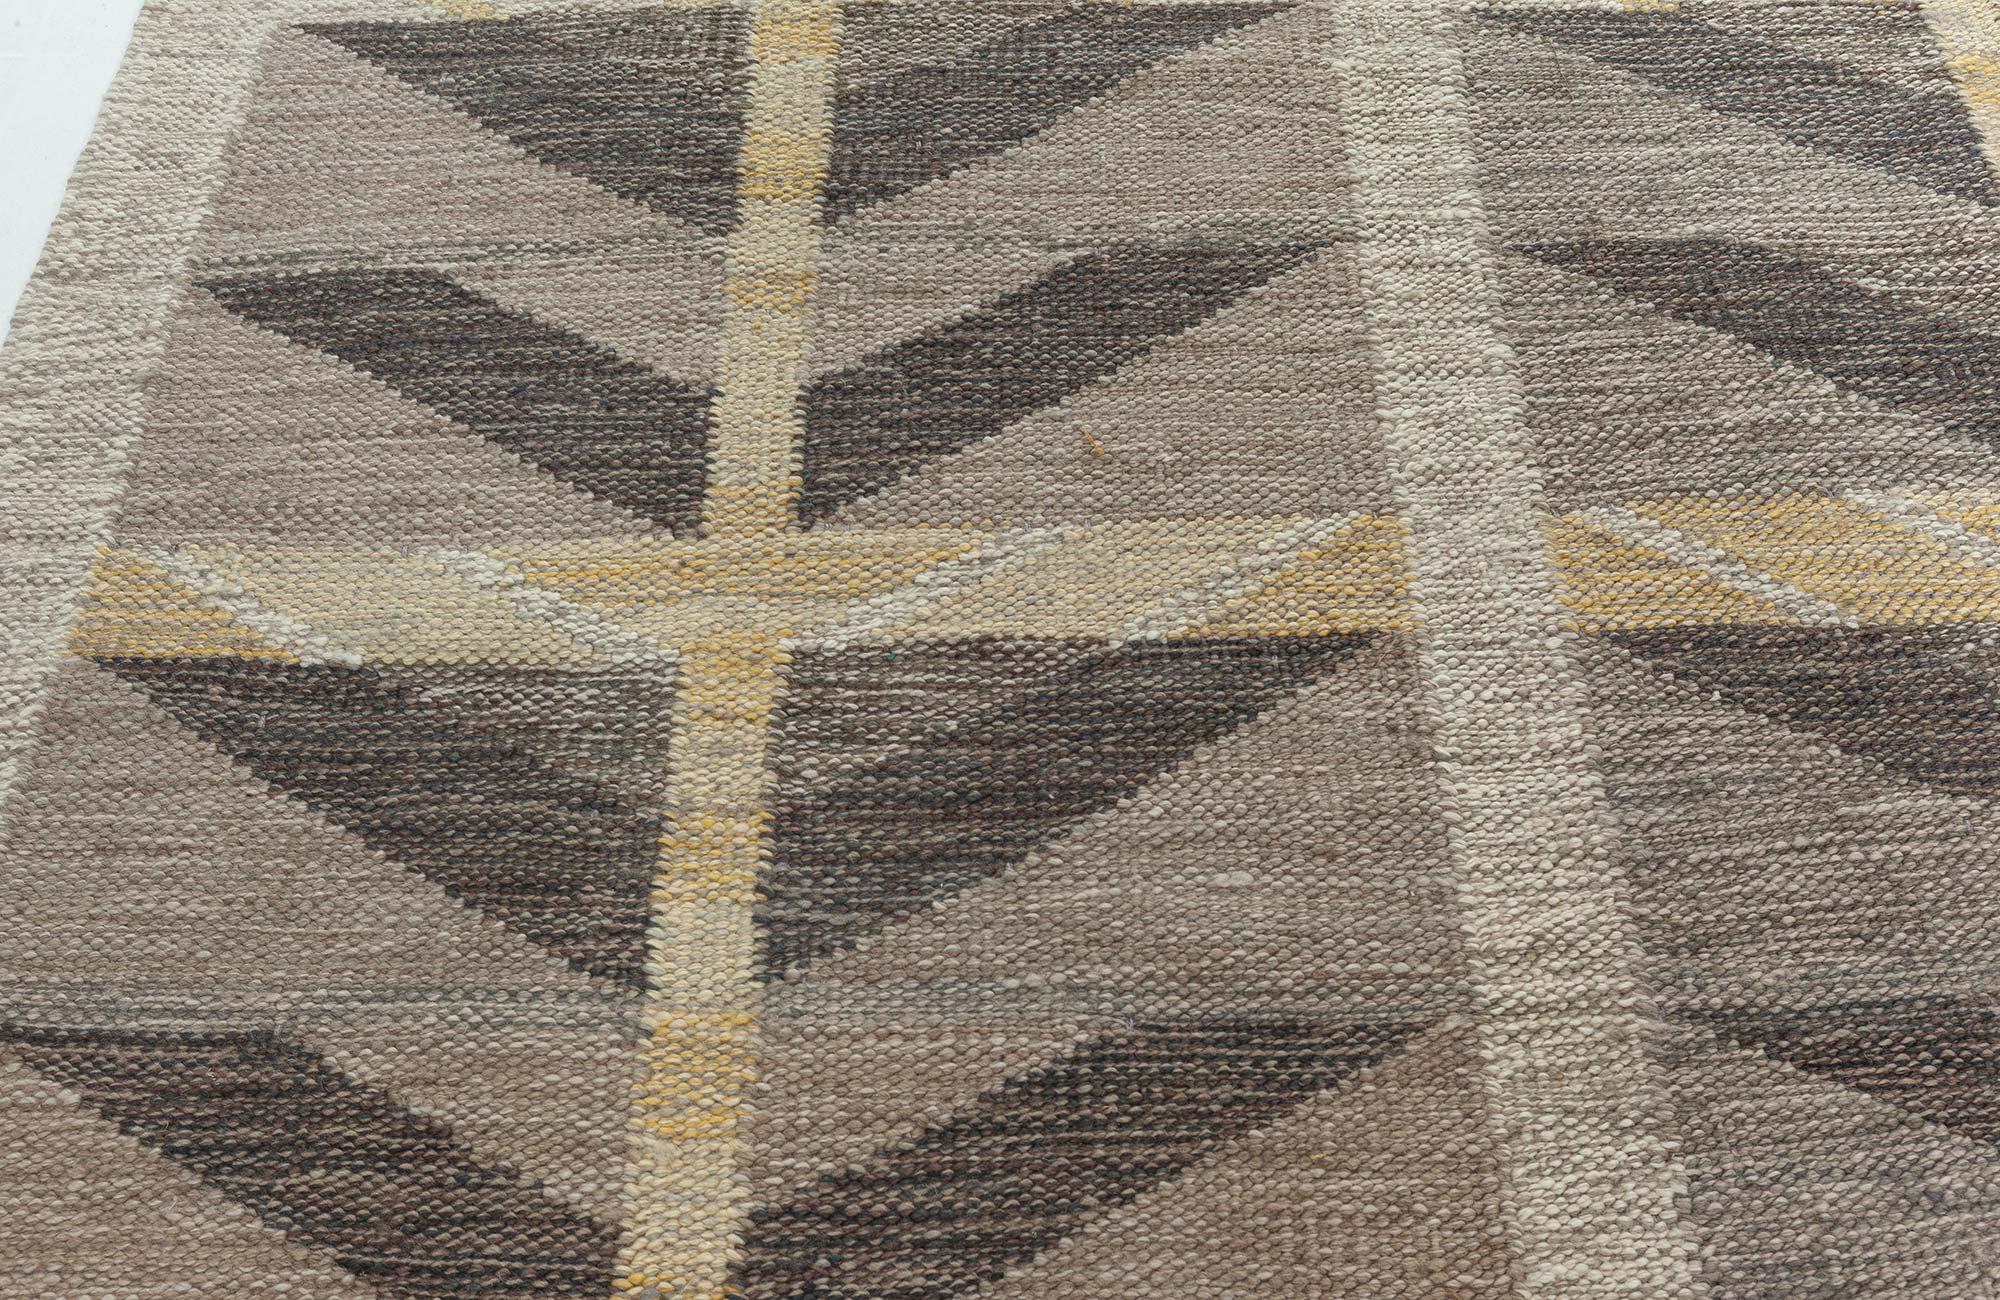 Contemporary Swedish Flat Weave Rug von Doris Leslie Blau
Größe: 11'9